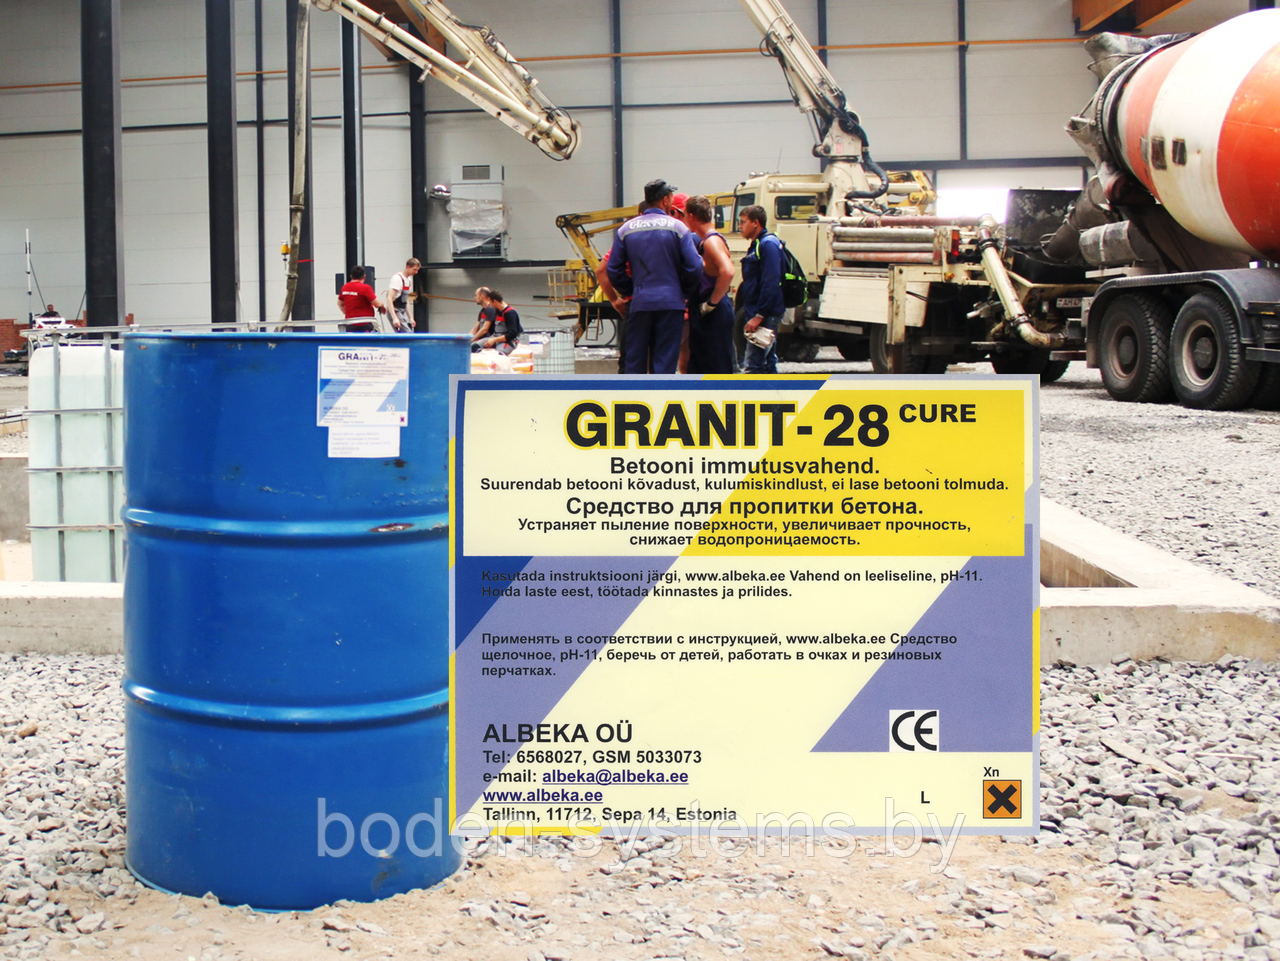 Granit-28Cure (150 л) - cредство упрочняющее для пропитки свежего и выдержанного бетона. СЕРТИФИКАТ РБ